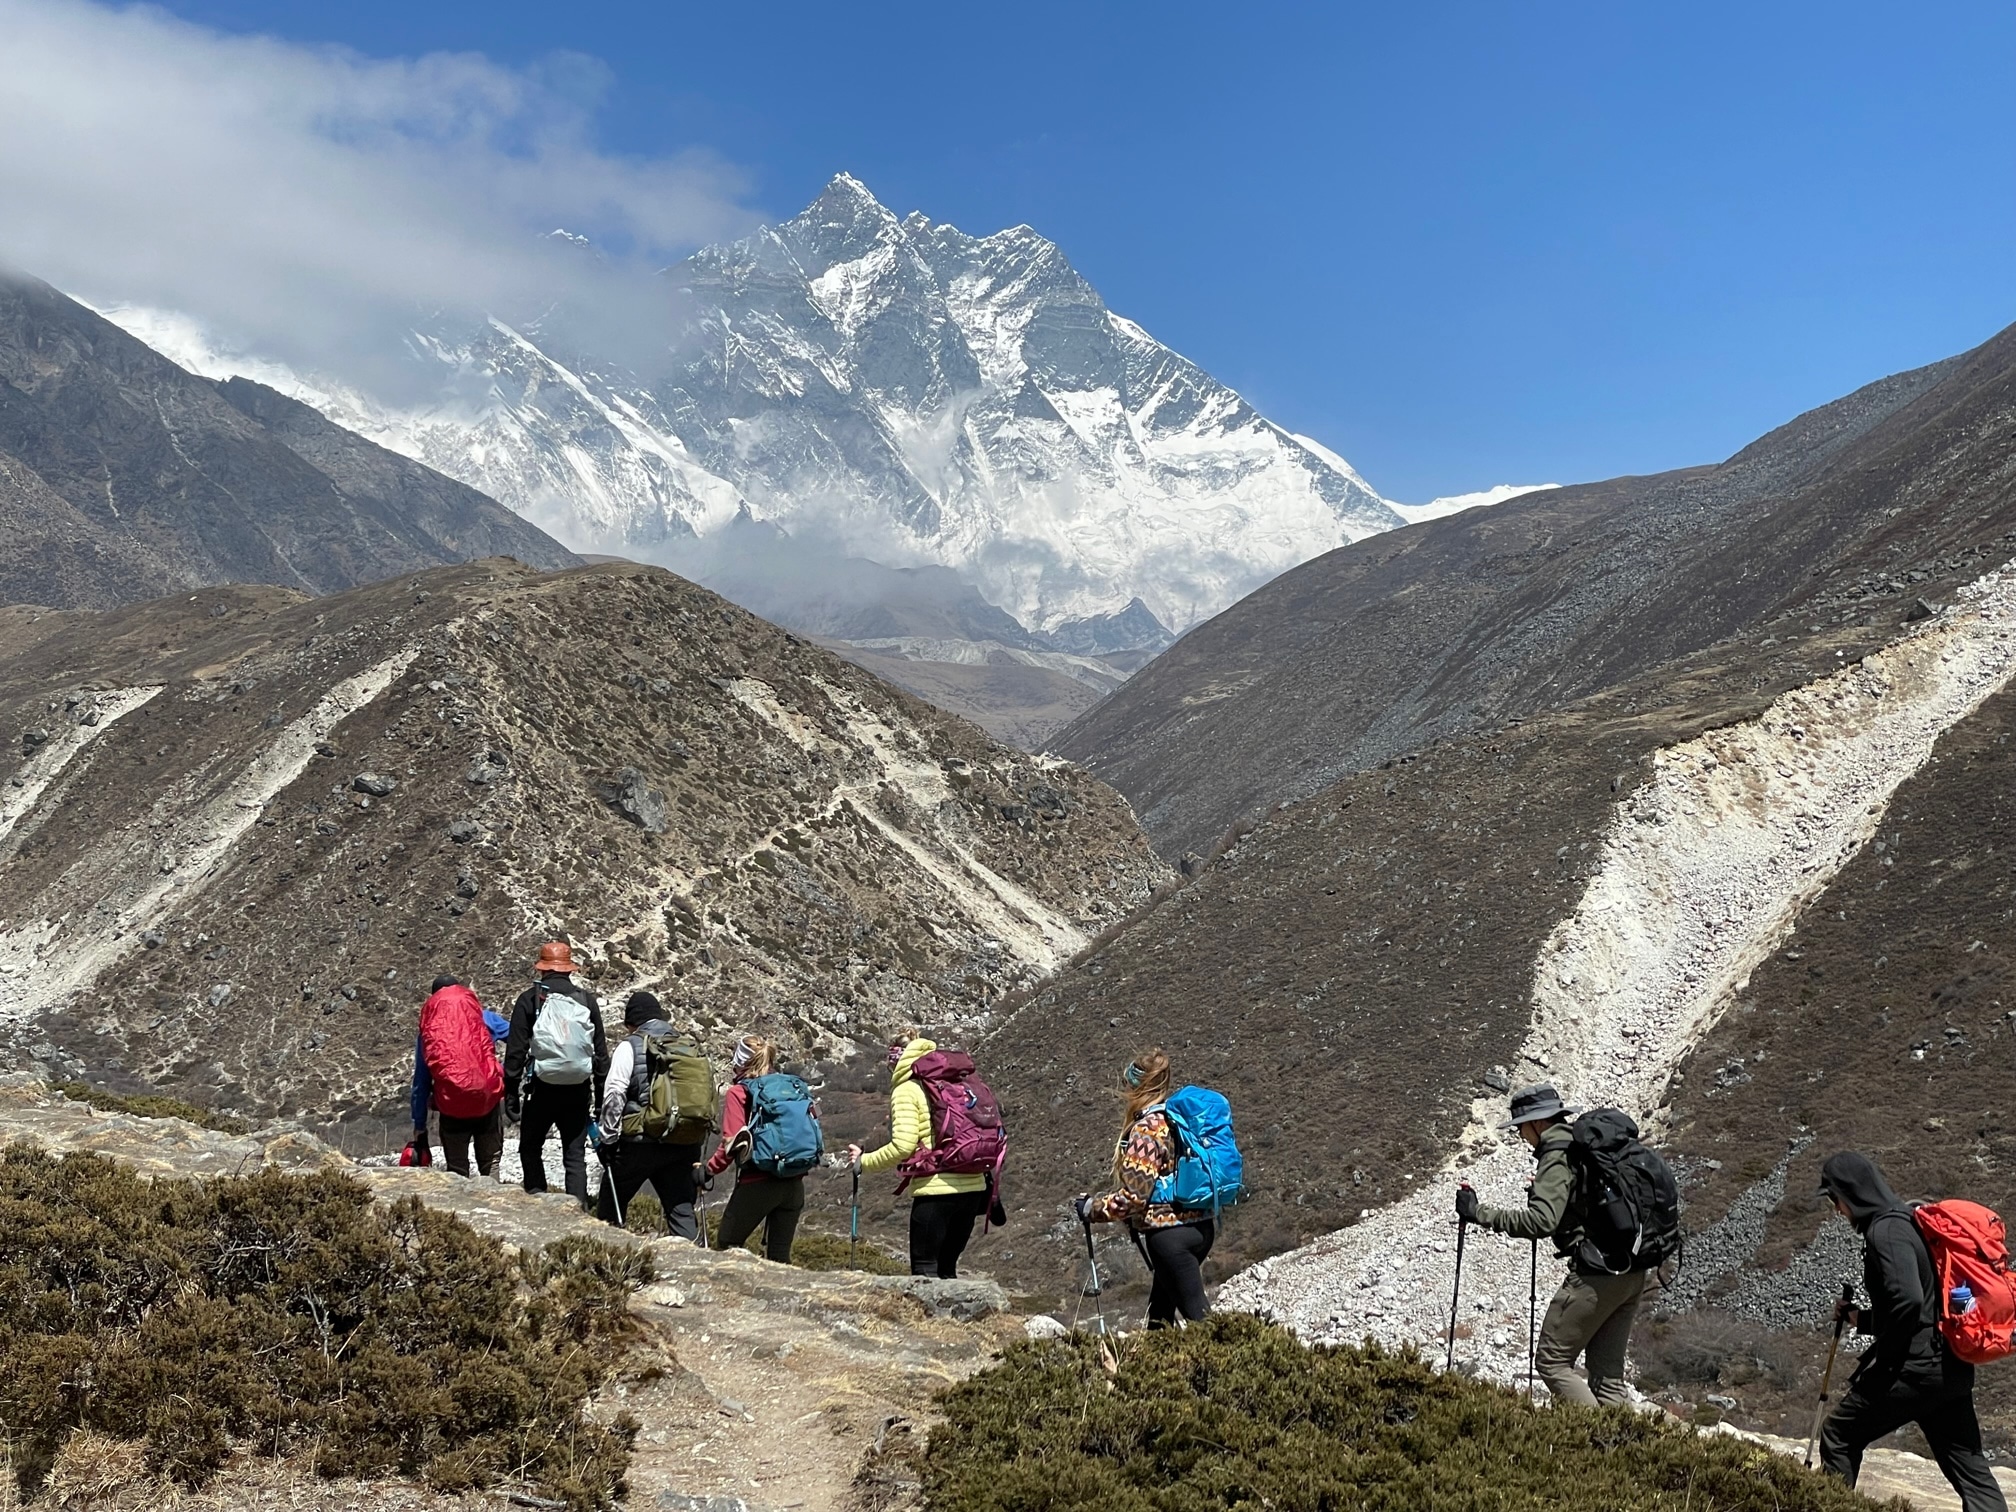 Elevation Gains for the Everest Base Camp Trek